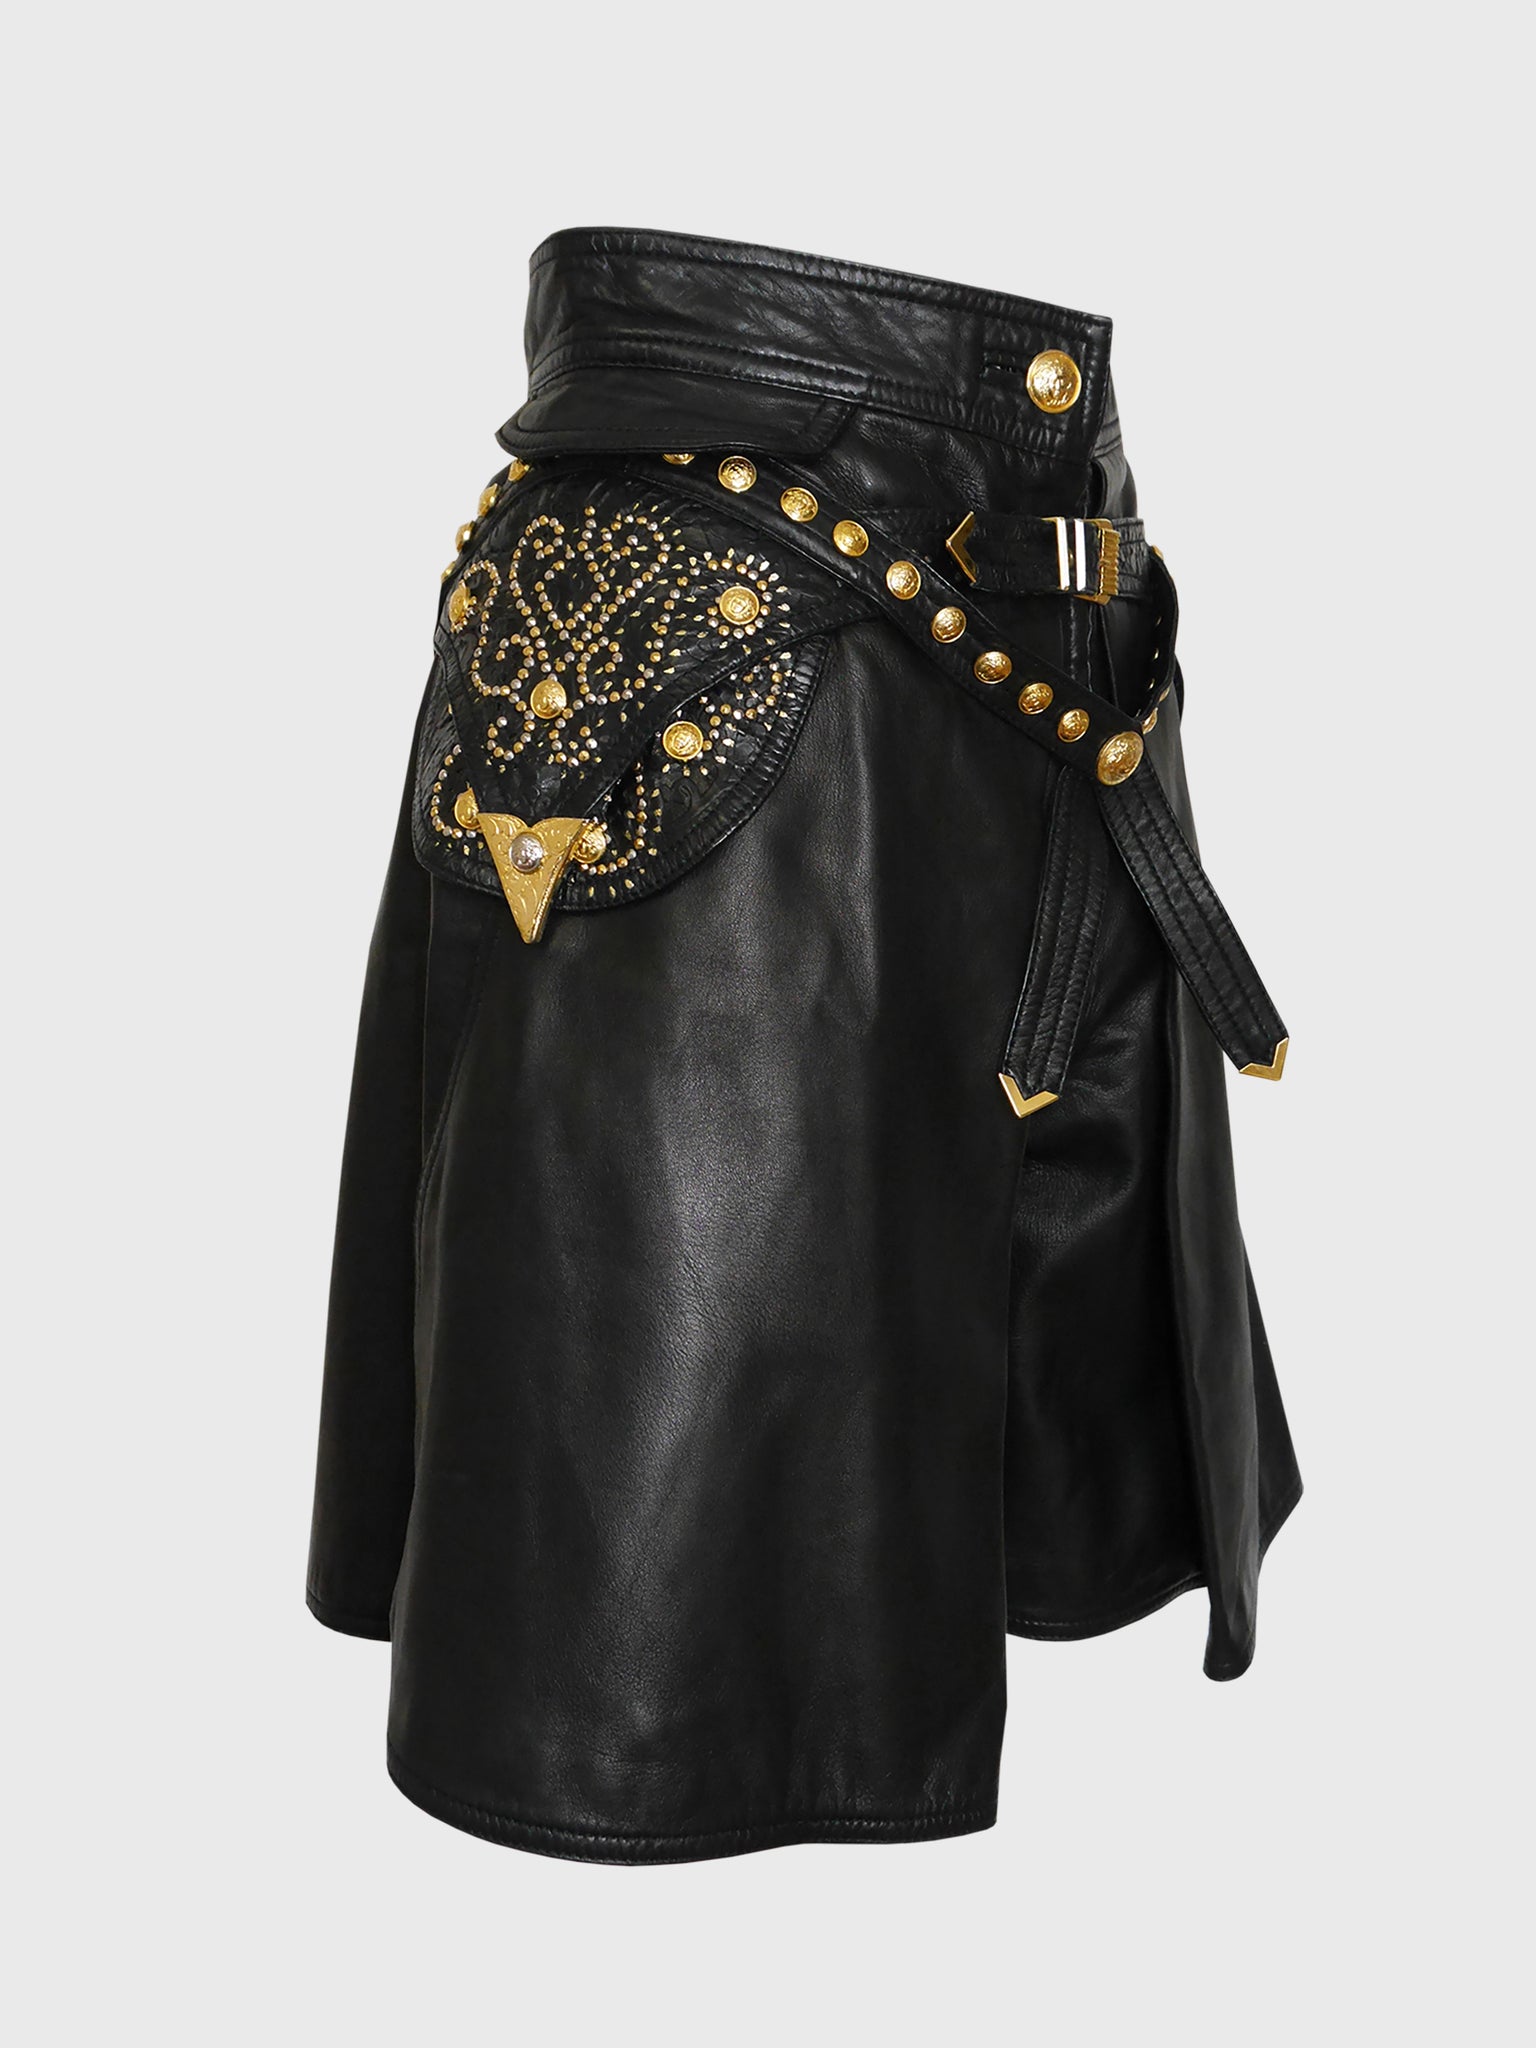 GIANNI VERSACE Couture Fall 1992 Vintage Studded Tooled Leather Bondage Gladiator Shorts